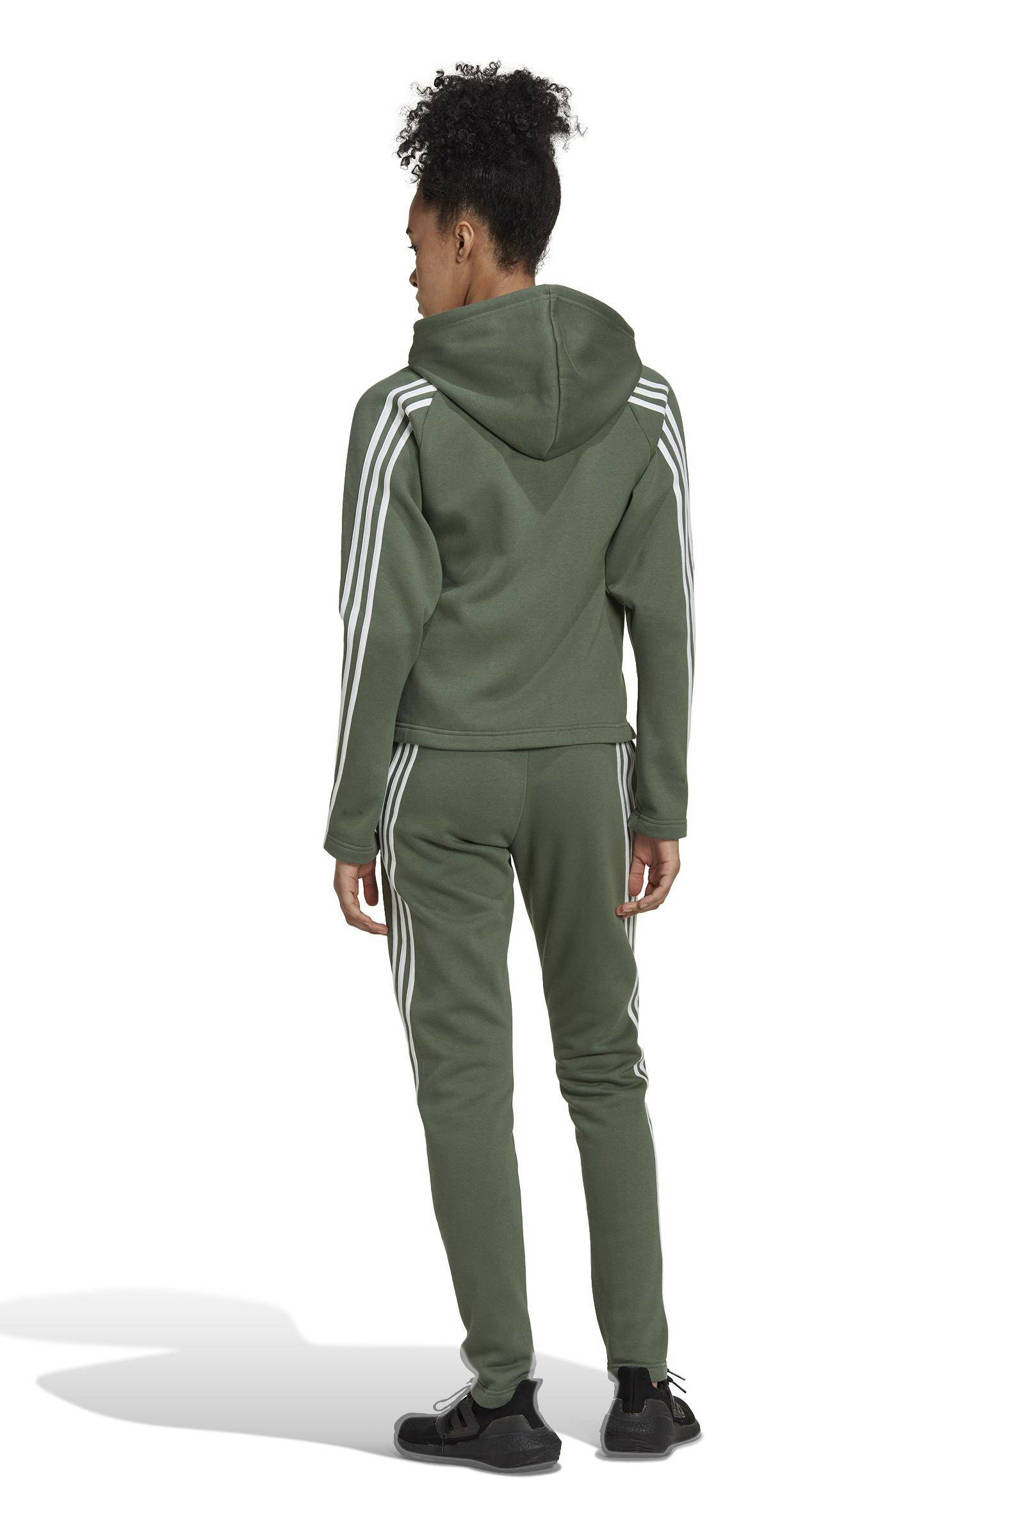 Afvoer plastic Zich afvragen adidas Performance fleece joggingpak groen/wit | wehkamp